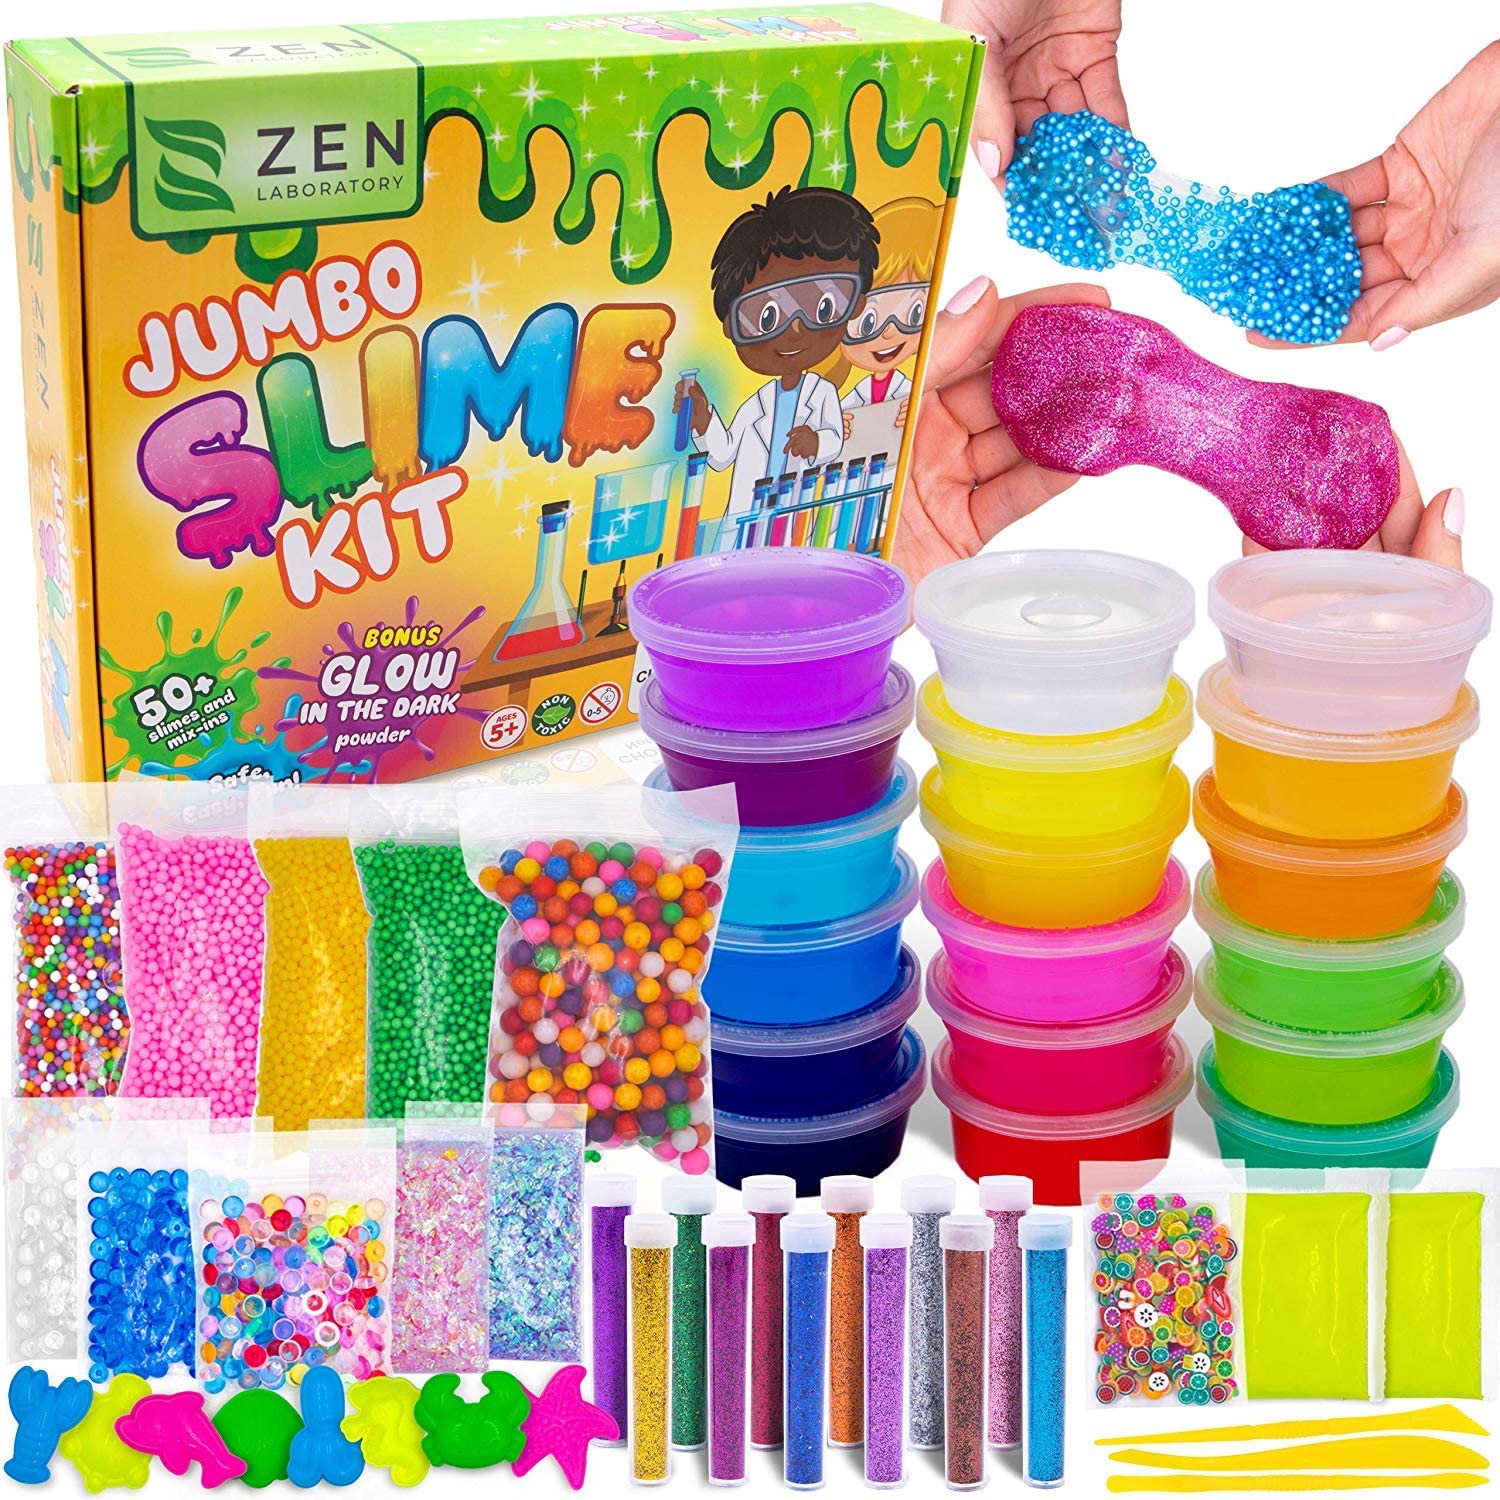 Zen Laboratory Jumbo Slime Kit